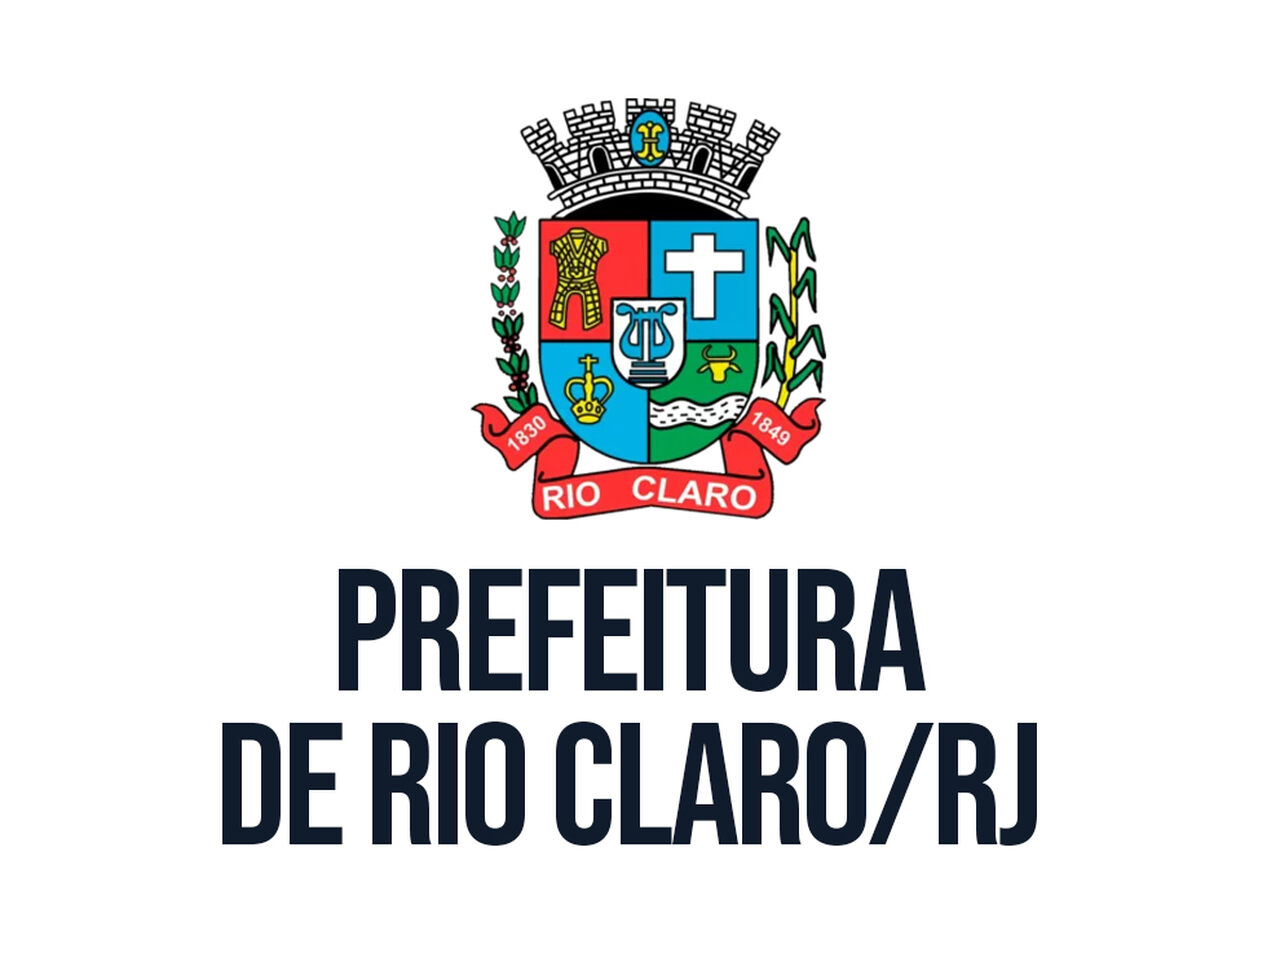 Logotipo prefeitura de Rio Claro RJ 